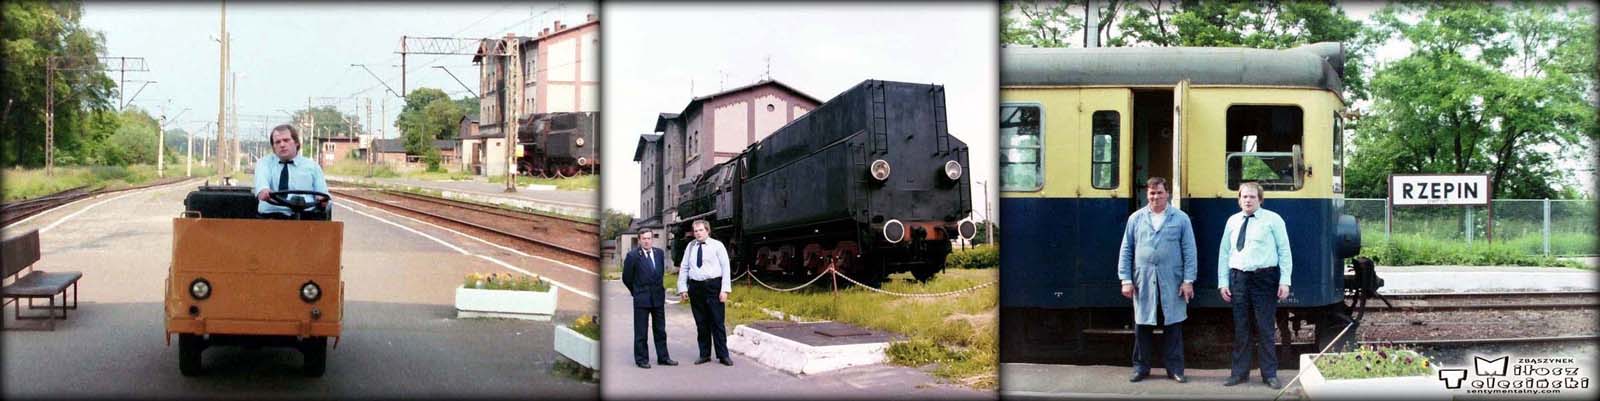 Rzepin w dniu 11.06.1994. Od lewej ja, ja z Kryspinem Nawotnikiem (nie żyje), Józef Weryk (nie żyje) i ja.